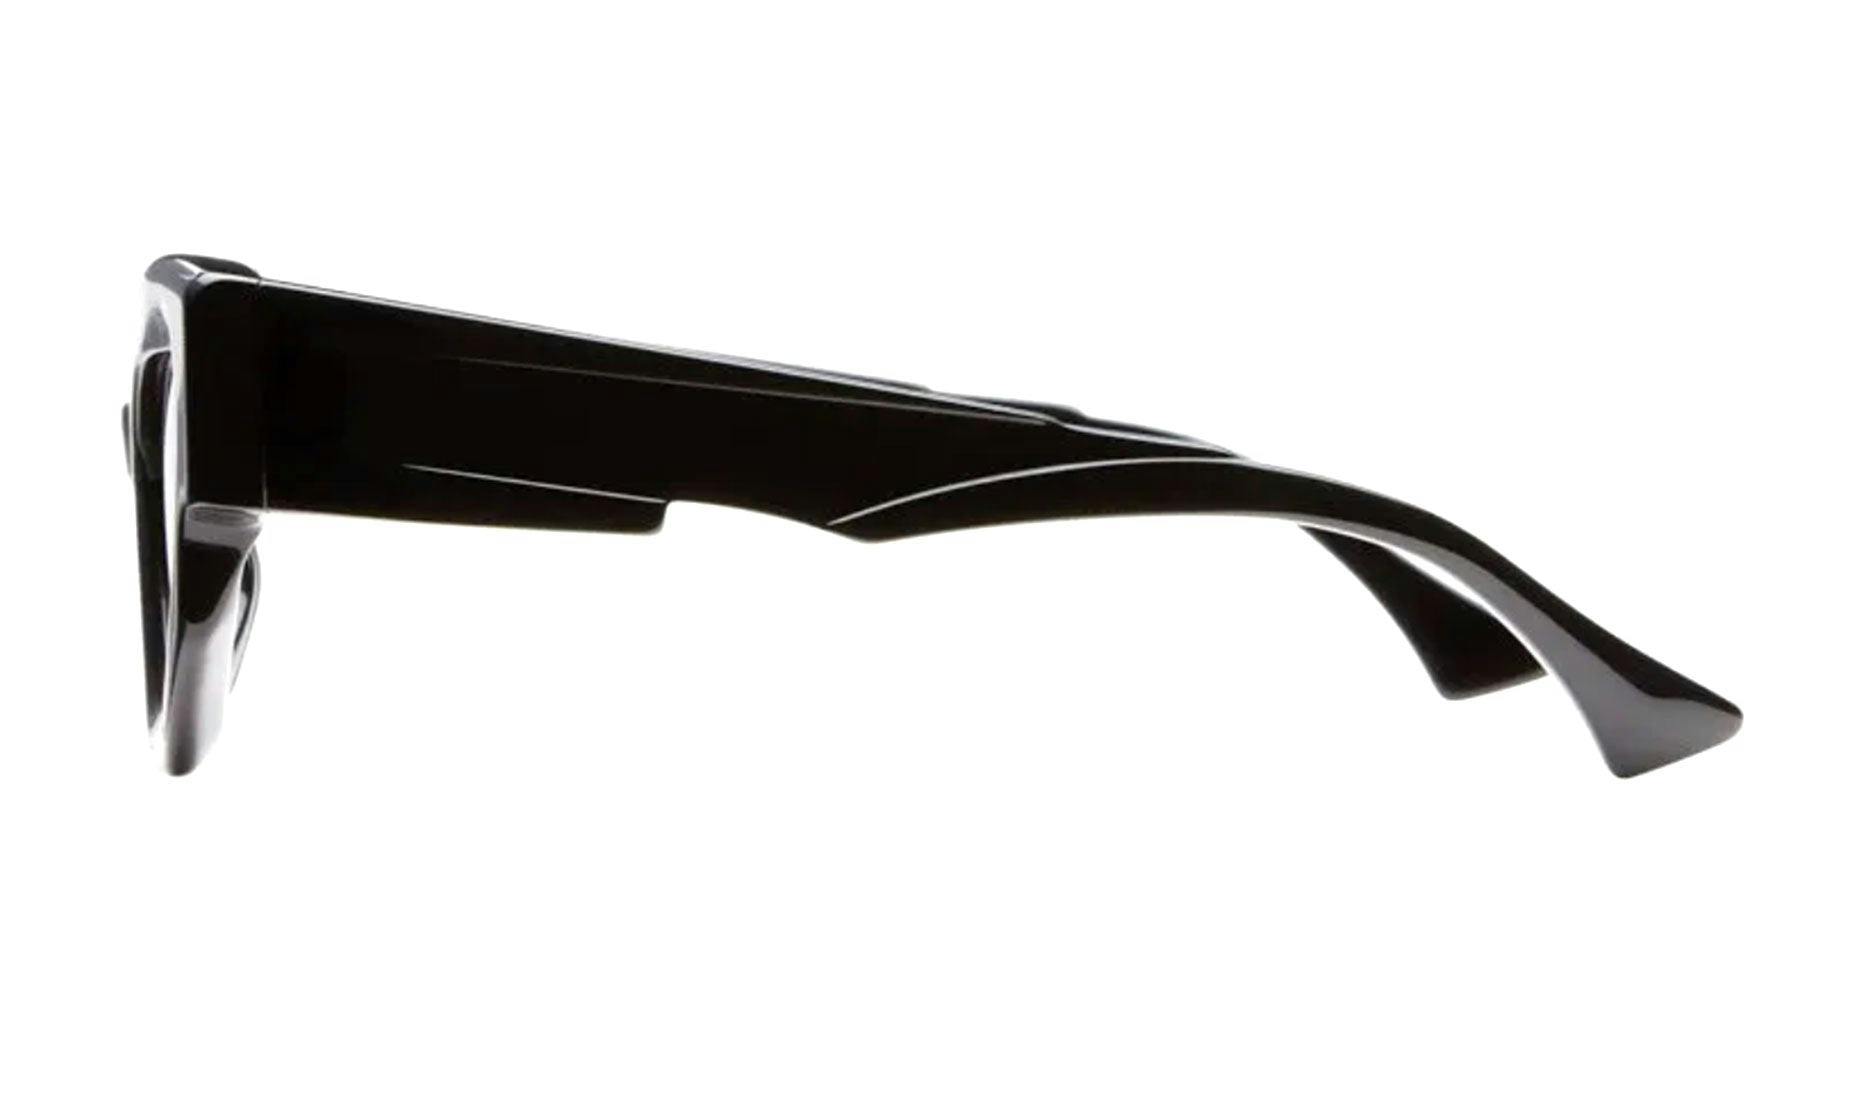 modèle de lunette de la marque Kuboraum